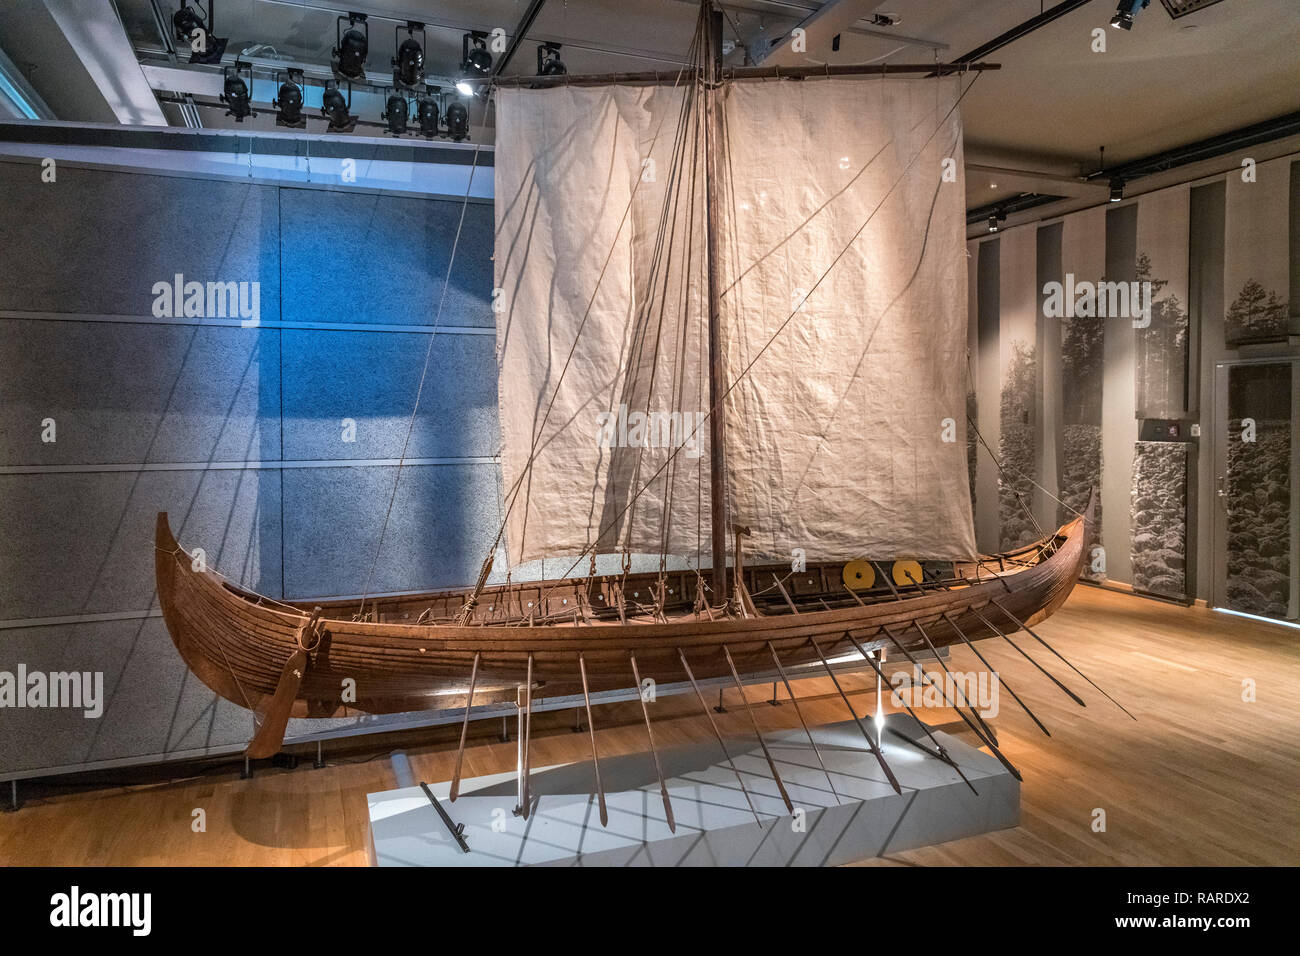 Bateau Viking. 1:6 modèle à l'échelle du 9e siècle navire de Gokstad, Musée de l'histoire suédoise (Historiska museet), Stockholm, Suède Banque D'Images